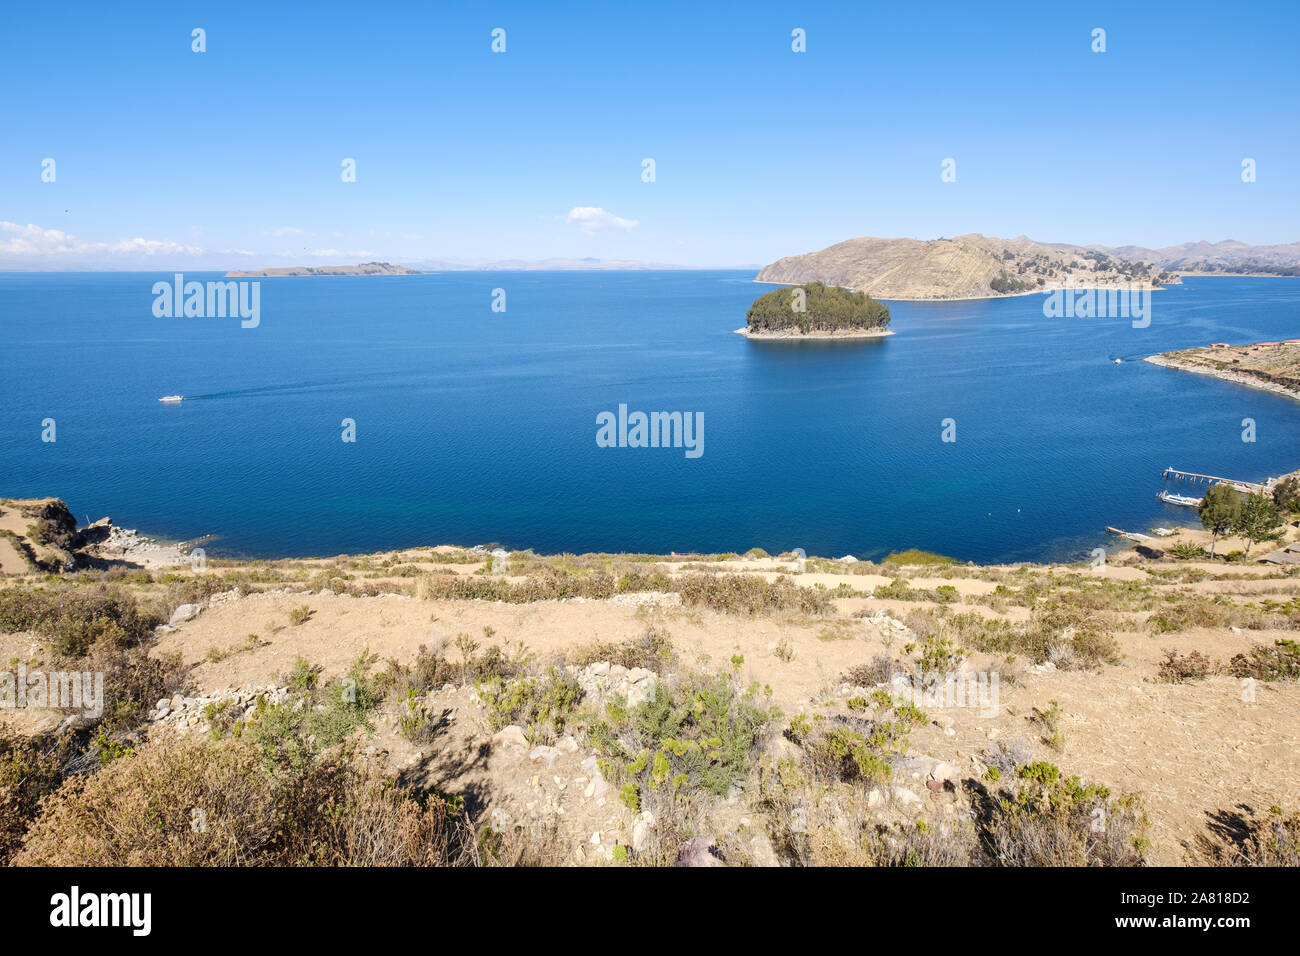 Vista panoramica dall'Isola del Sole Il tempio del sole le rovine, Chillaca isola e isola della luna in background, il lago Titicaca, Bolivia Foto Stock